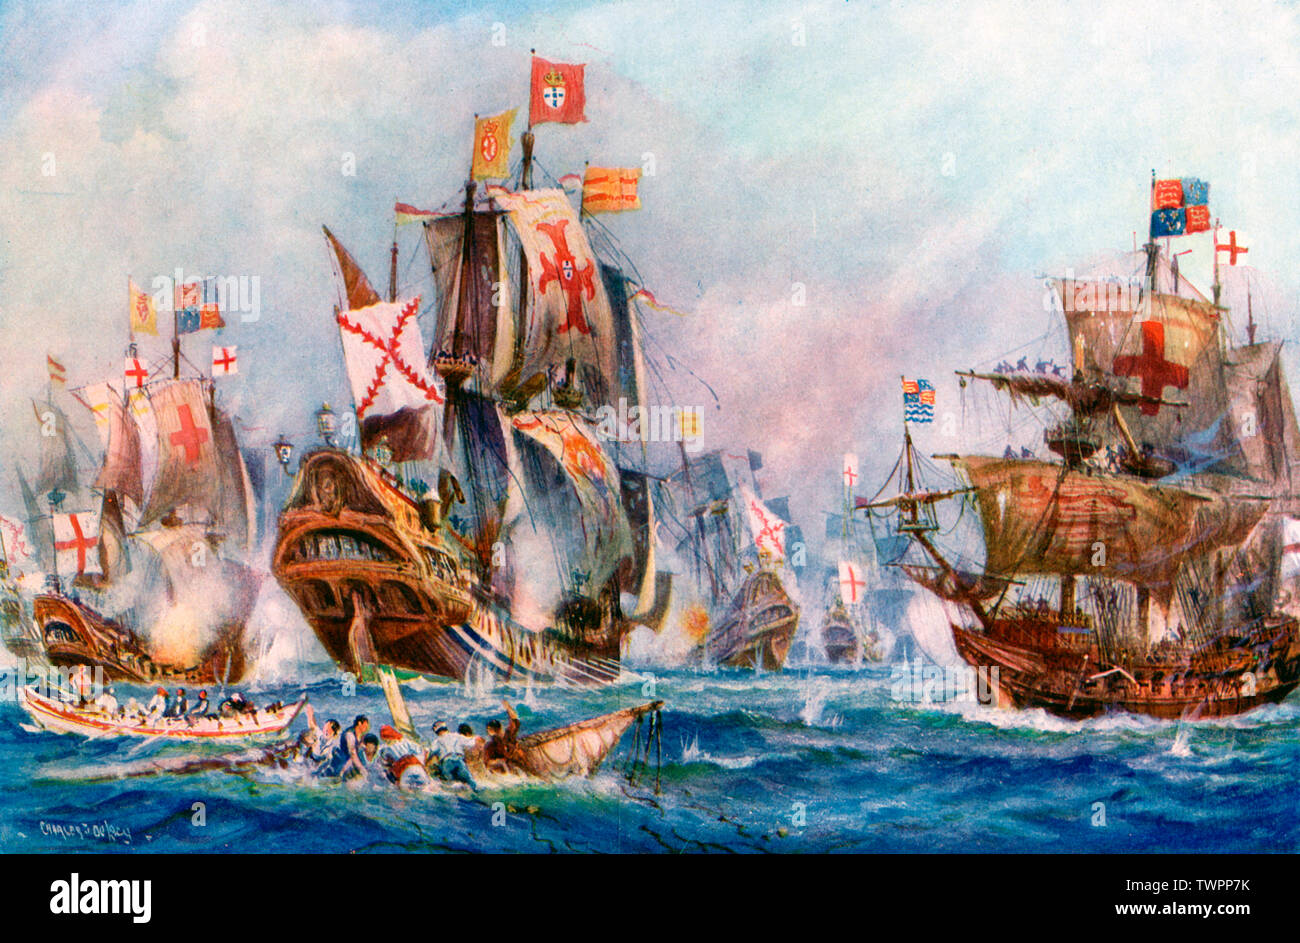 „Der glorreiche Sieg von Elisabeths Seeleuten über der spanischen Armada, 1588“. Von Charles De Lacy (1856-1929). Die spanische Armada war eine spanische Marineflotte, die von König Philipp II. Von Spanien (1527-1598) berühmt wurde, um Großbritannien im Jahr 1588 anzugreifen. Es wurde von der Royal Navy of England unter dem Kommando von Sir Francis Drake (c1540-1596), während der Herrschaft von Königin Elizabeth I (1533-1603) besiegt. Stockfoto